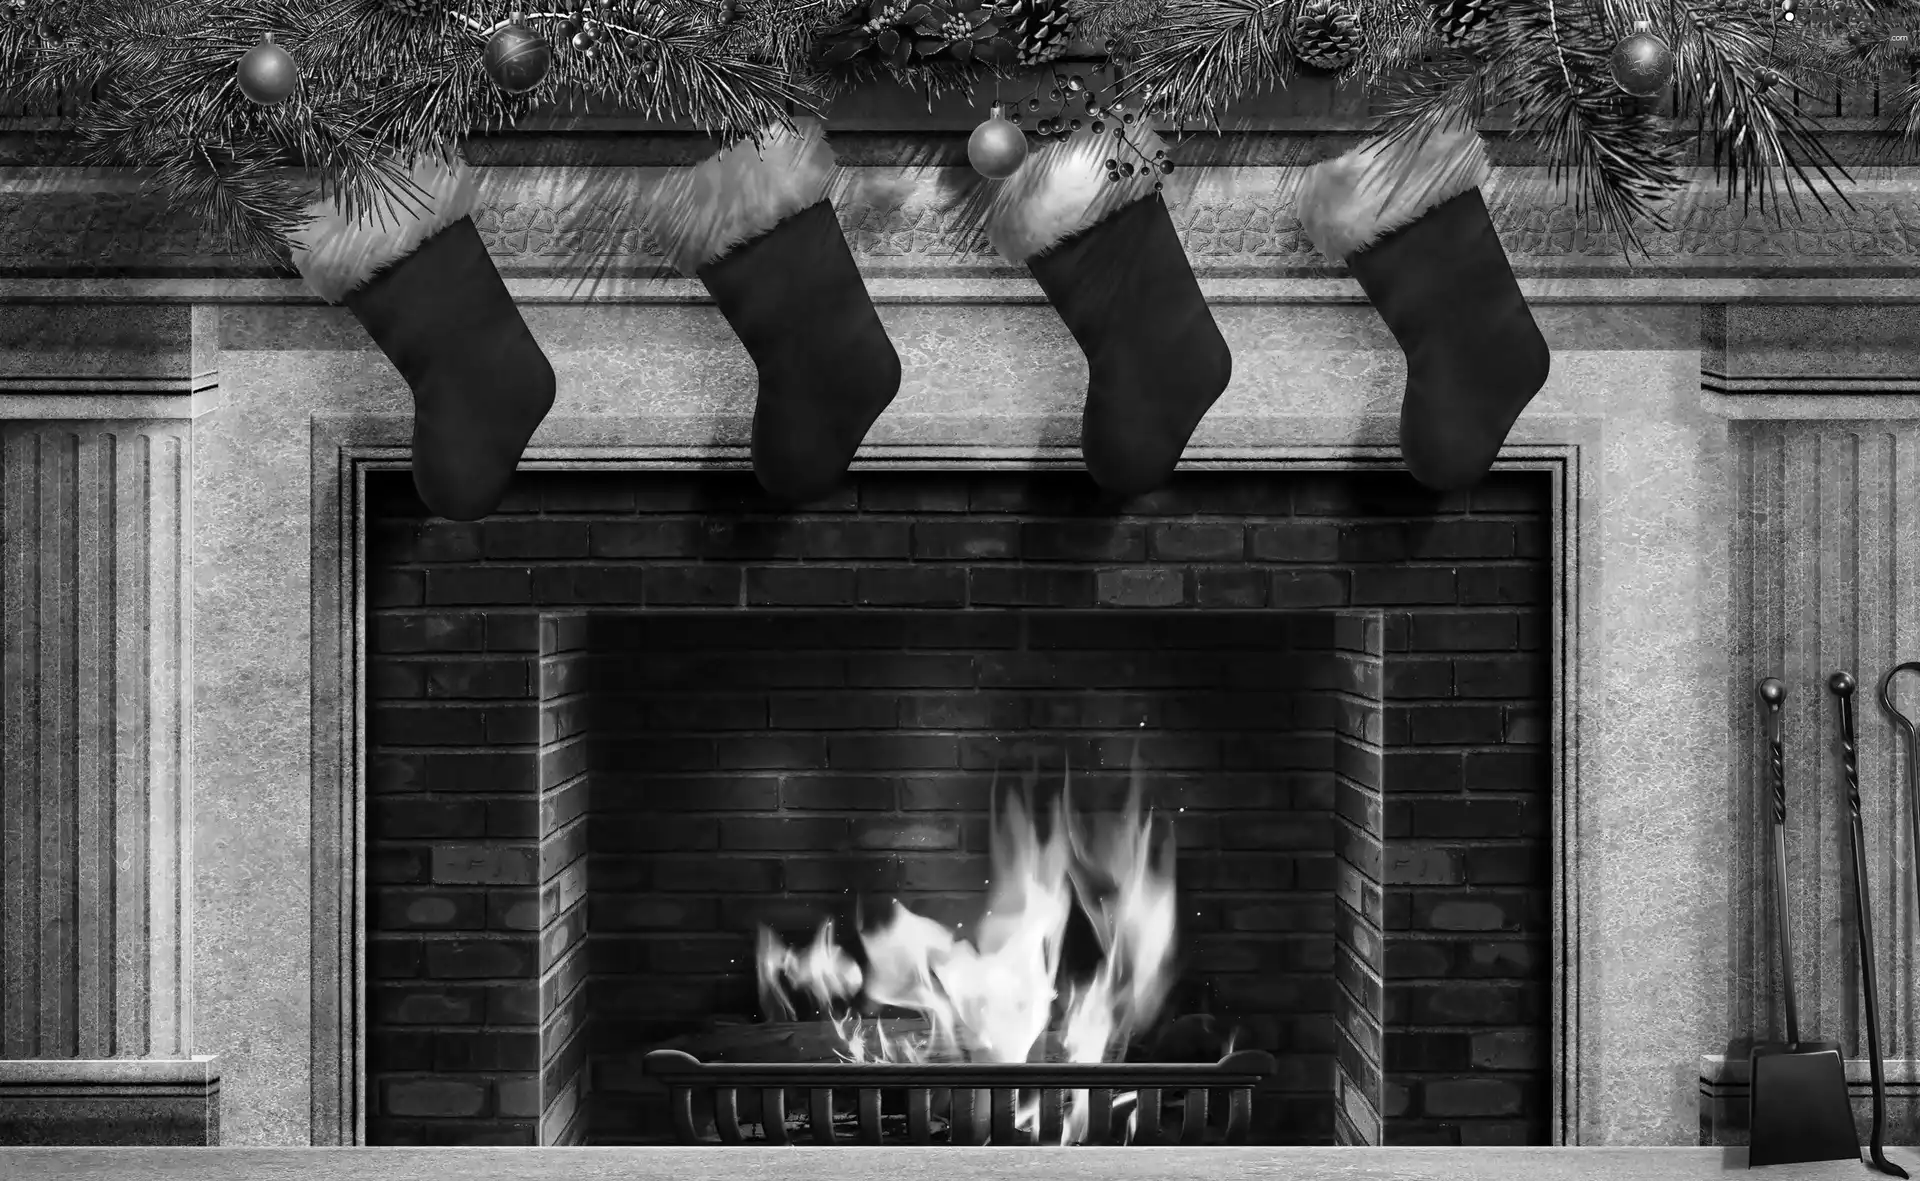 socks, burner chimney, baubles, cones, spruce, flame